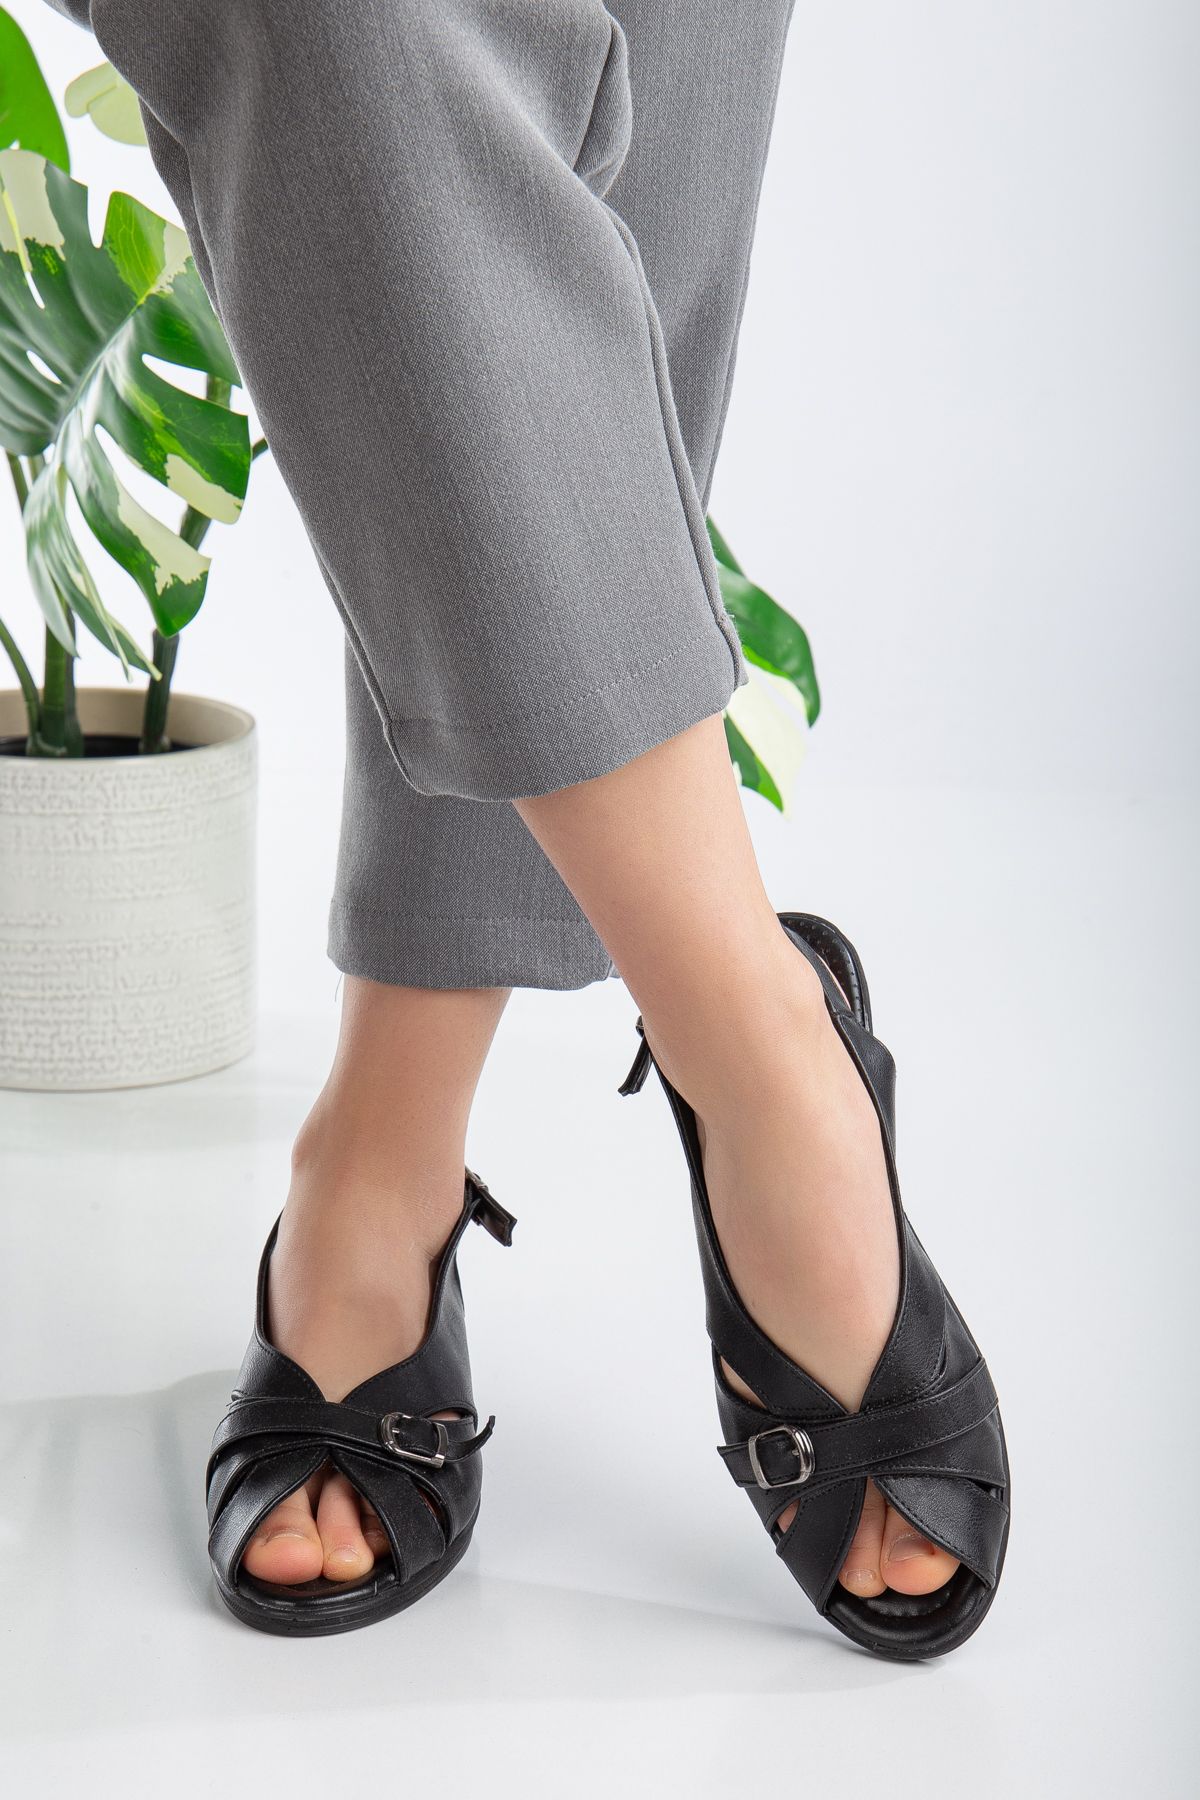 kabkabi Kadın Siyah Ve Krem Bantlı Yazlık Ortopedik Taban Anne Ayakkabısı Sandalet